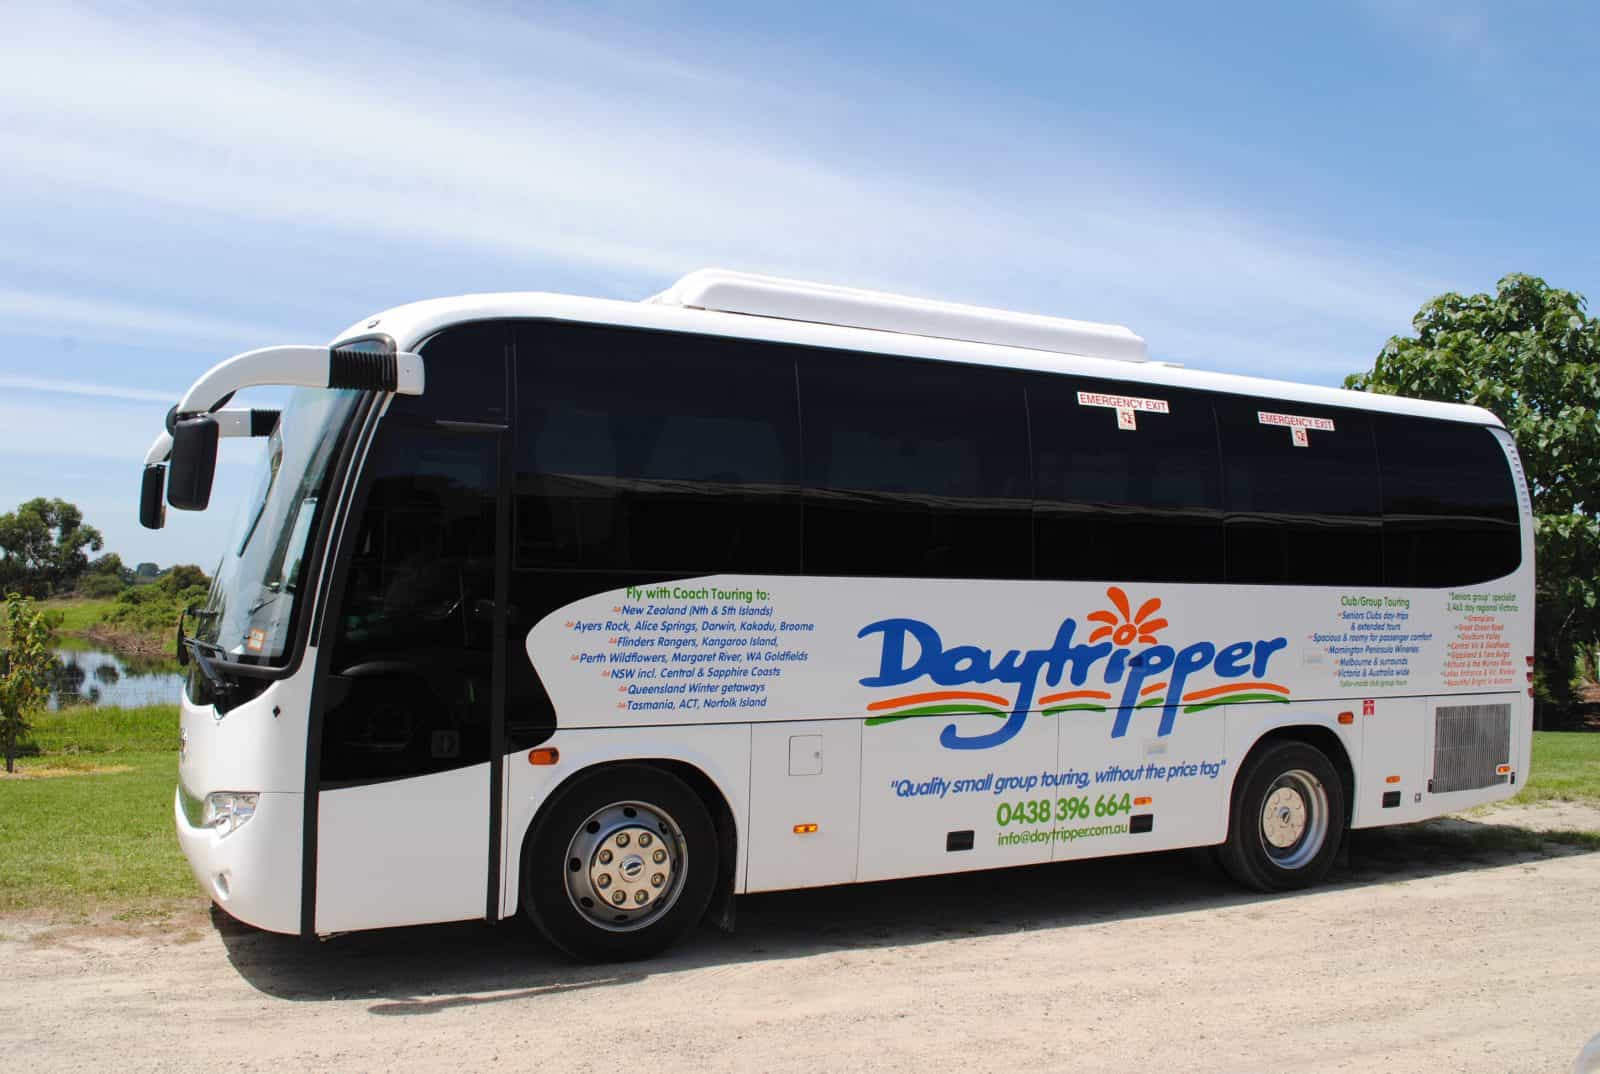 Daytripper Tour bus